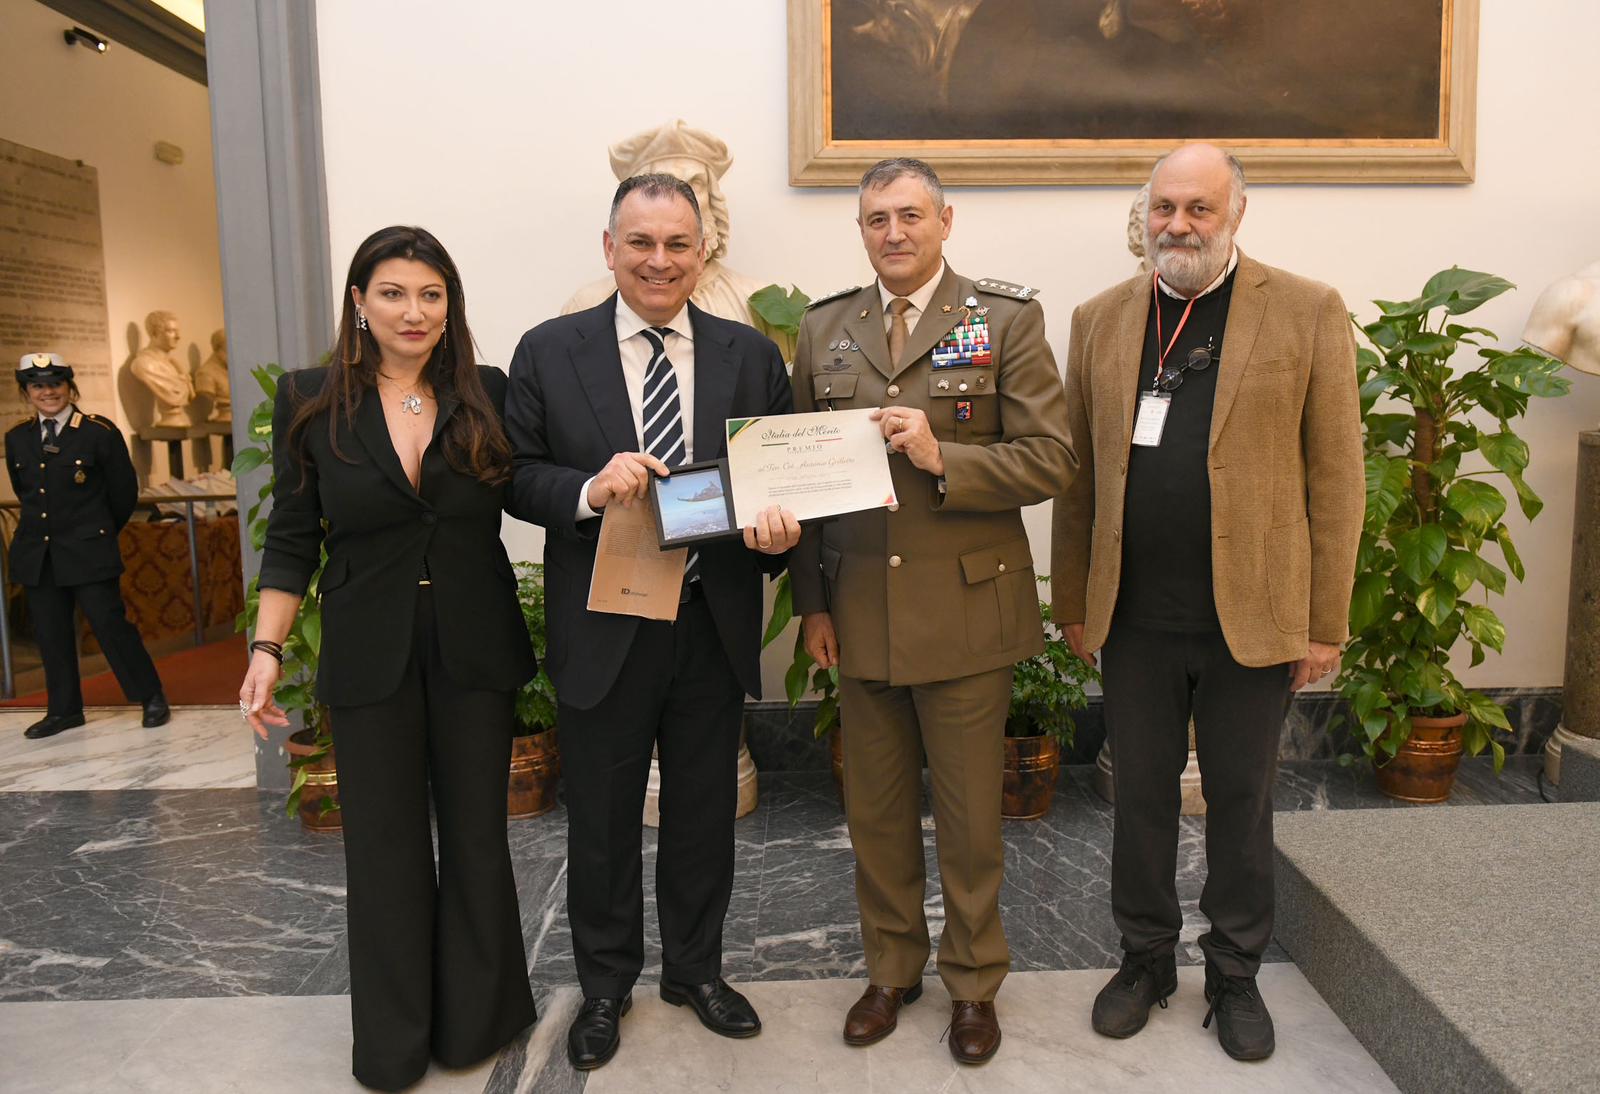 Il Premio internazionale “Italia del Merito” ad Antonio Grilletto, l’ufficiale «di casa» nel Cilento